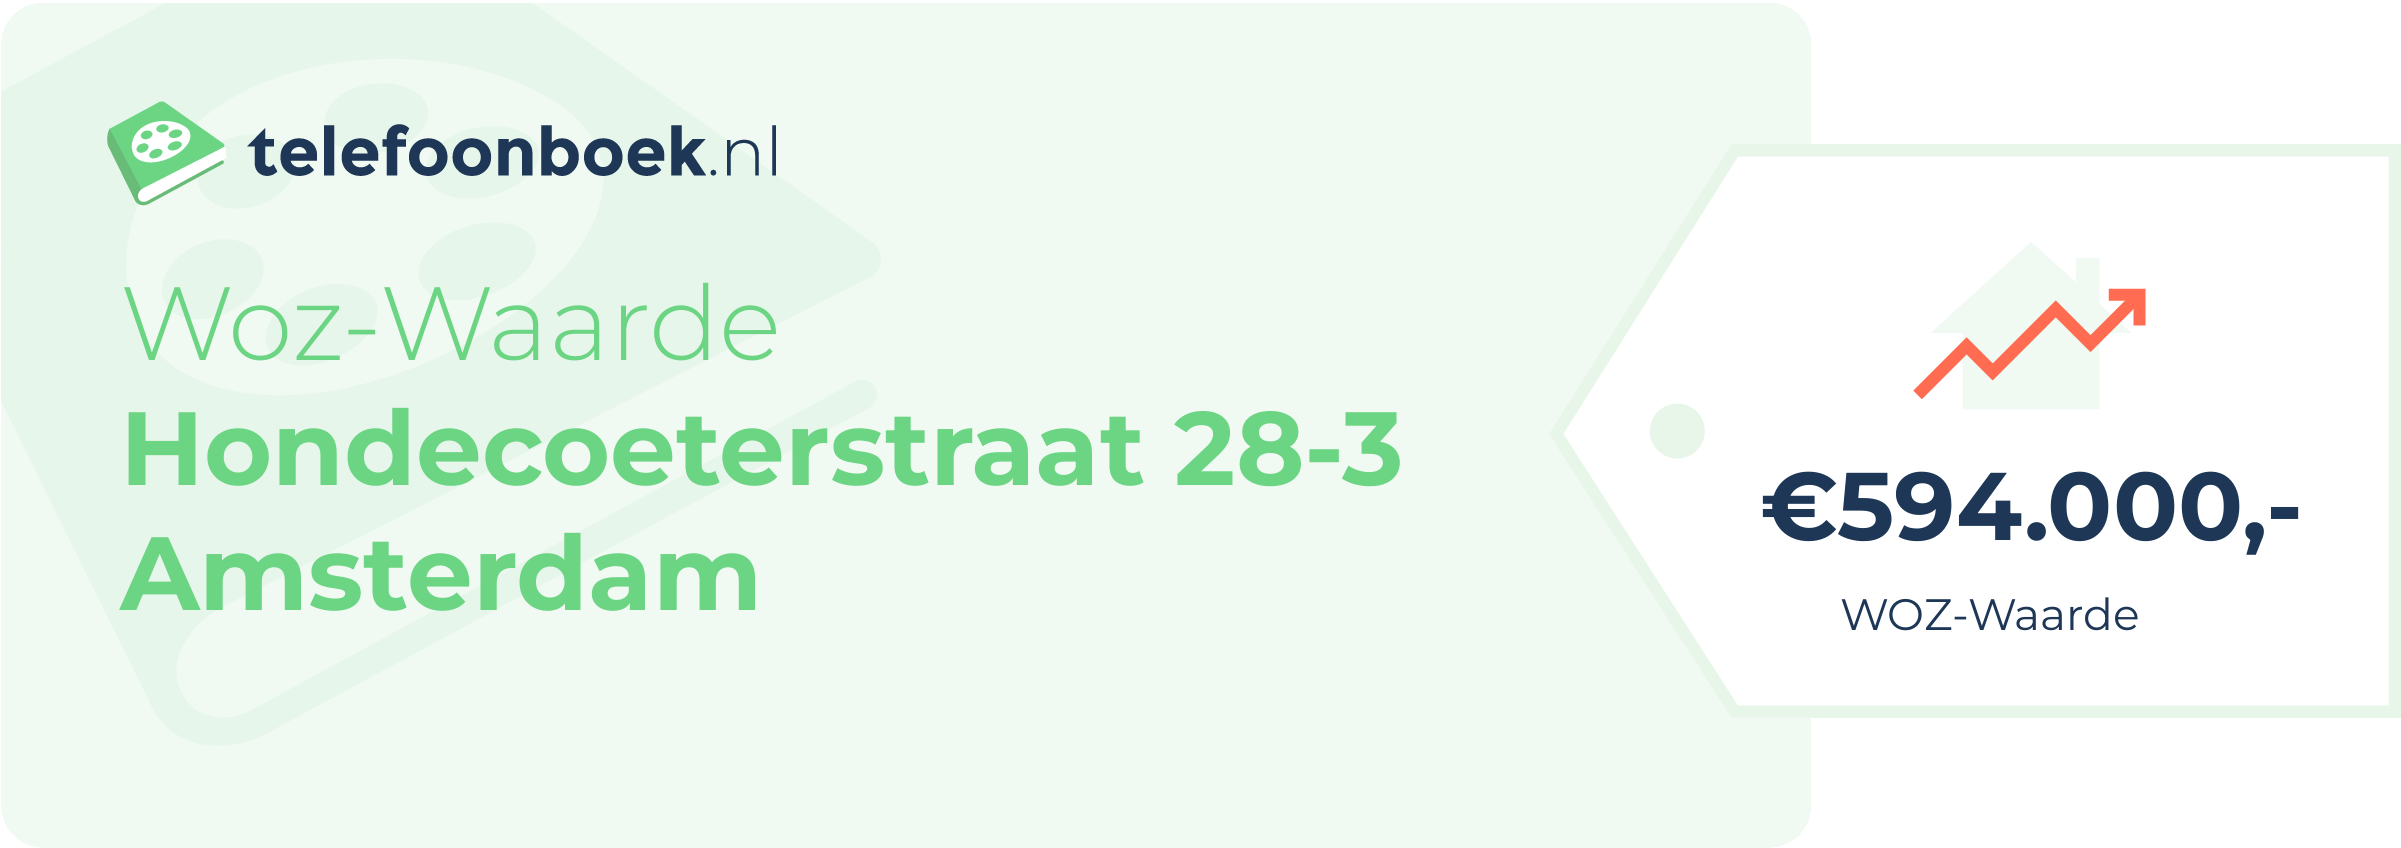 WOZ-waarde Hondecoeterstraat 28-3 Amsterdam